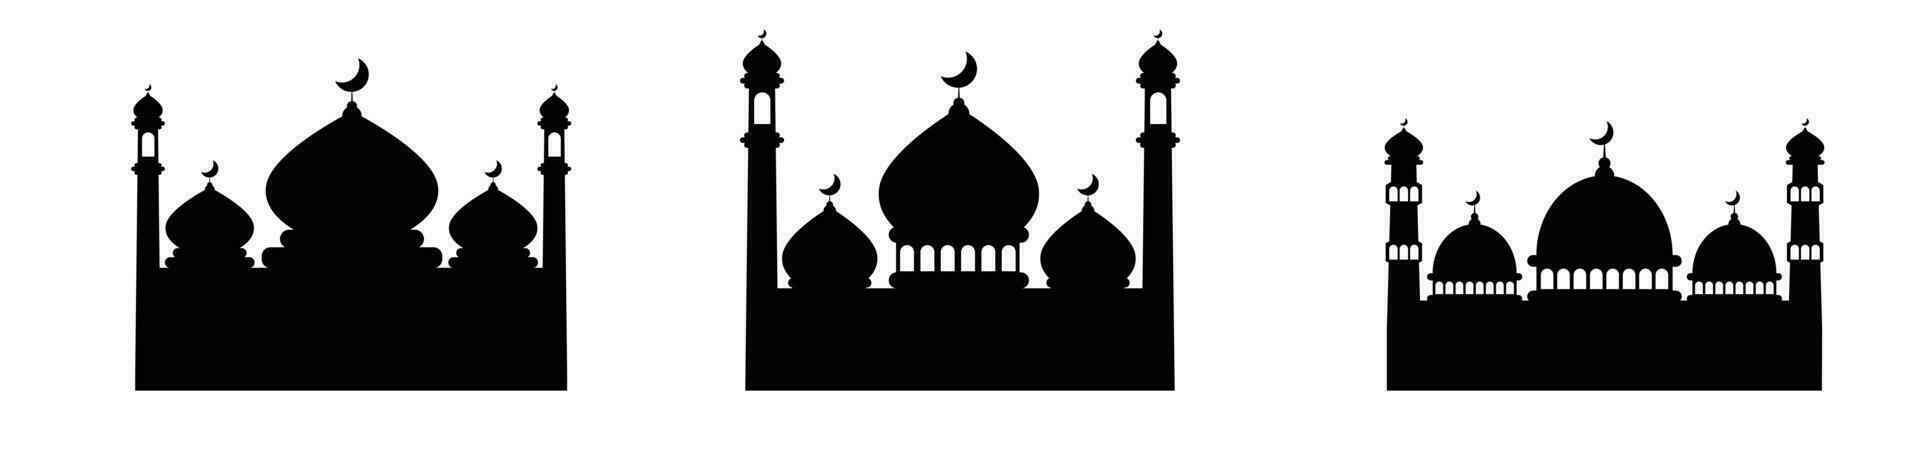 mosquée noir silhouette islamique bâtiment prière vecteur